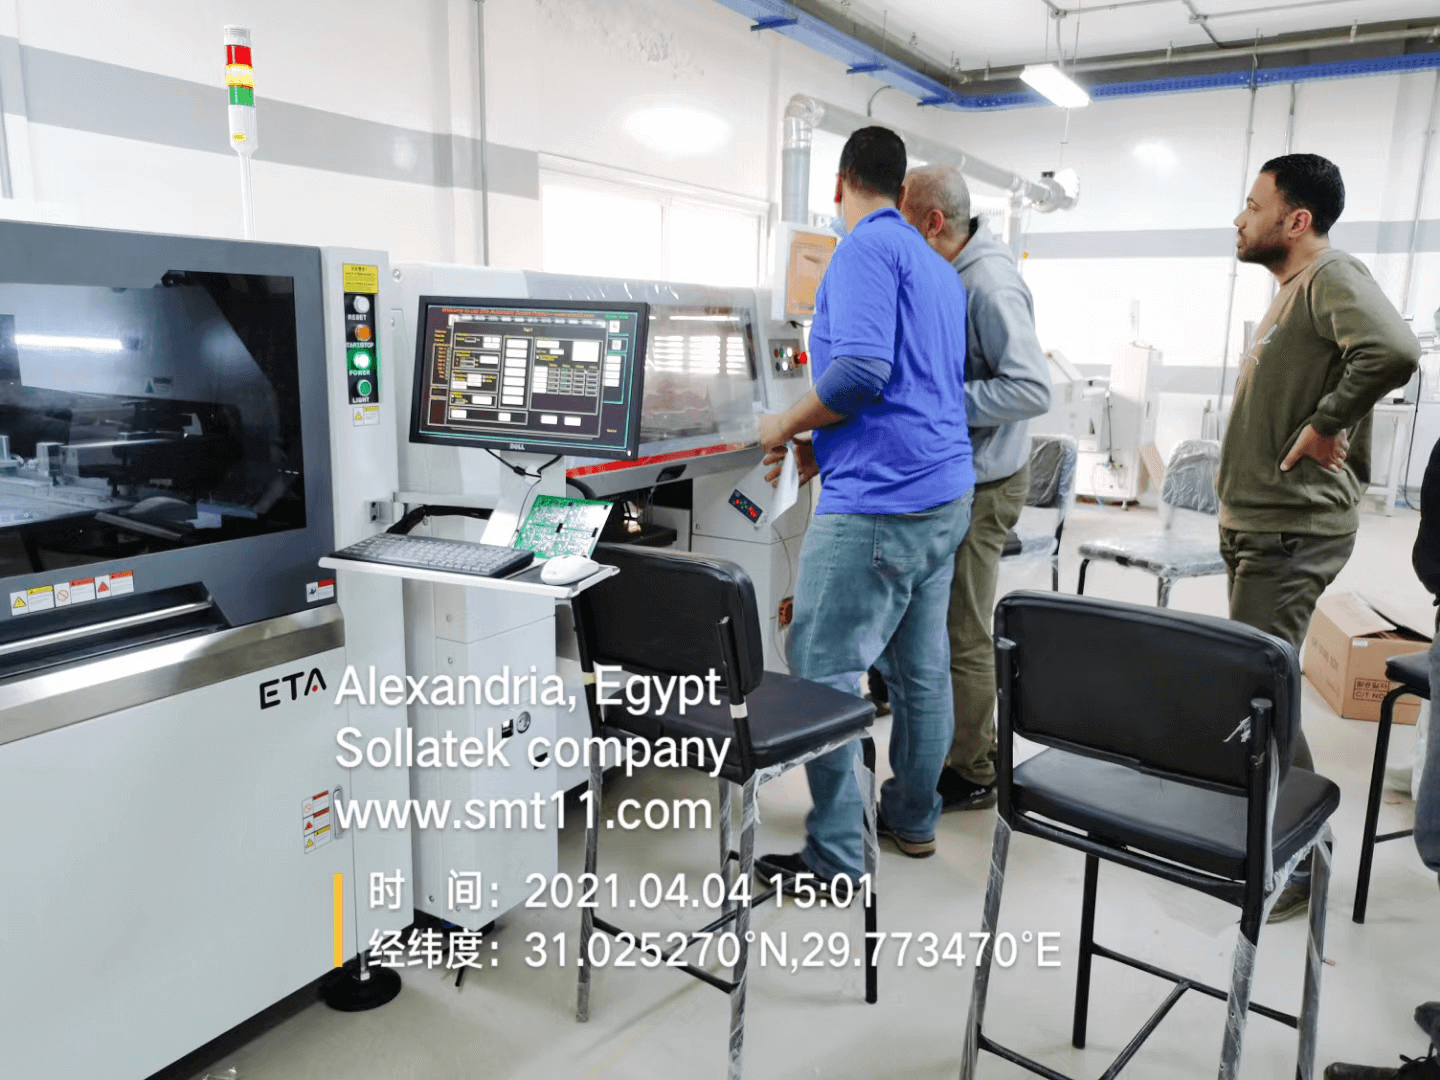 4 ETA Global Service in Ägypten